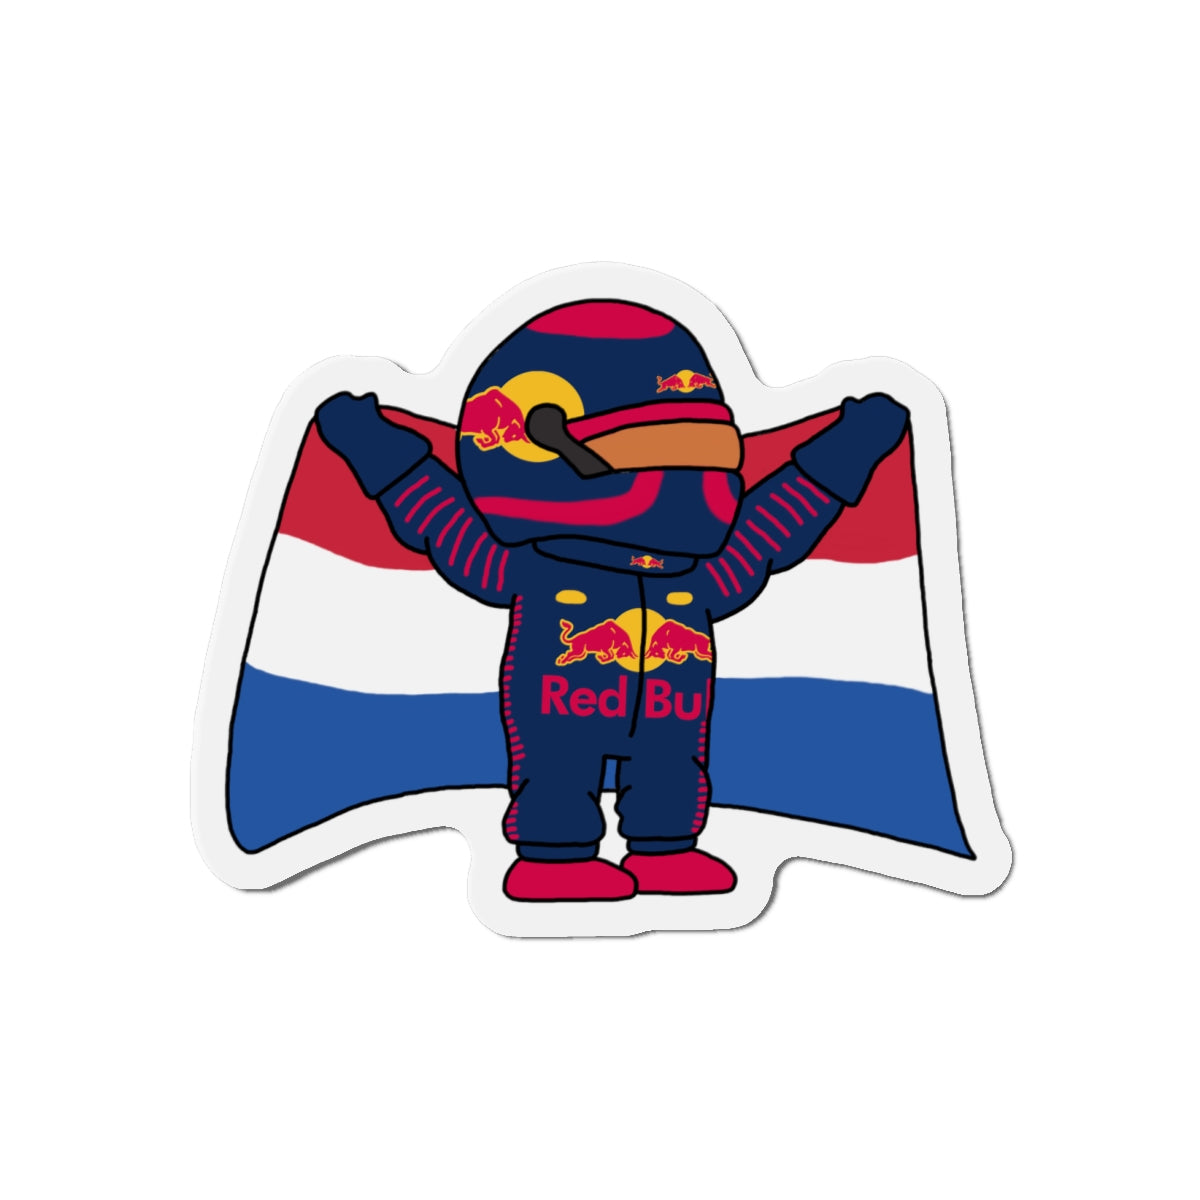 NeVerStappen Red Bull Formula 1 F1 Max Verstappen Magnets Next Cult Brand F1, Max Verstappen, Red Bull